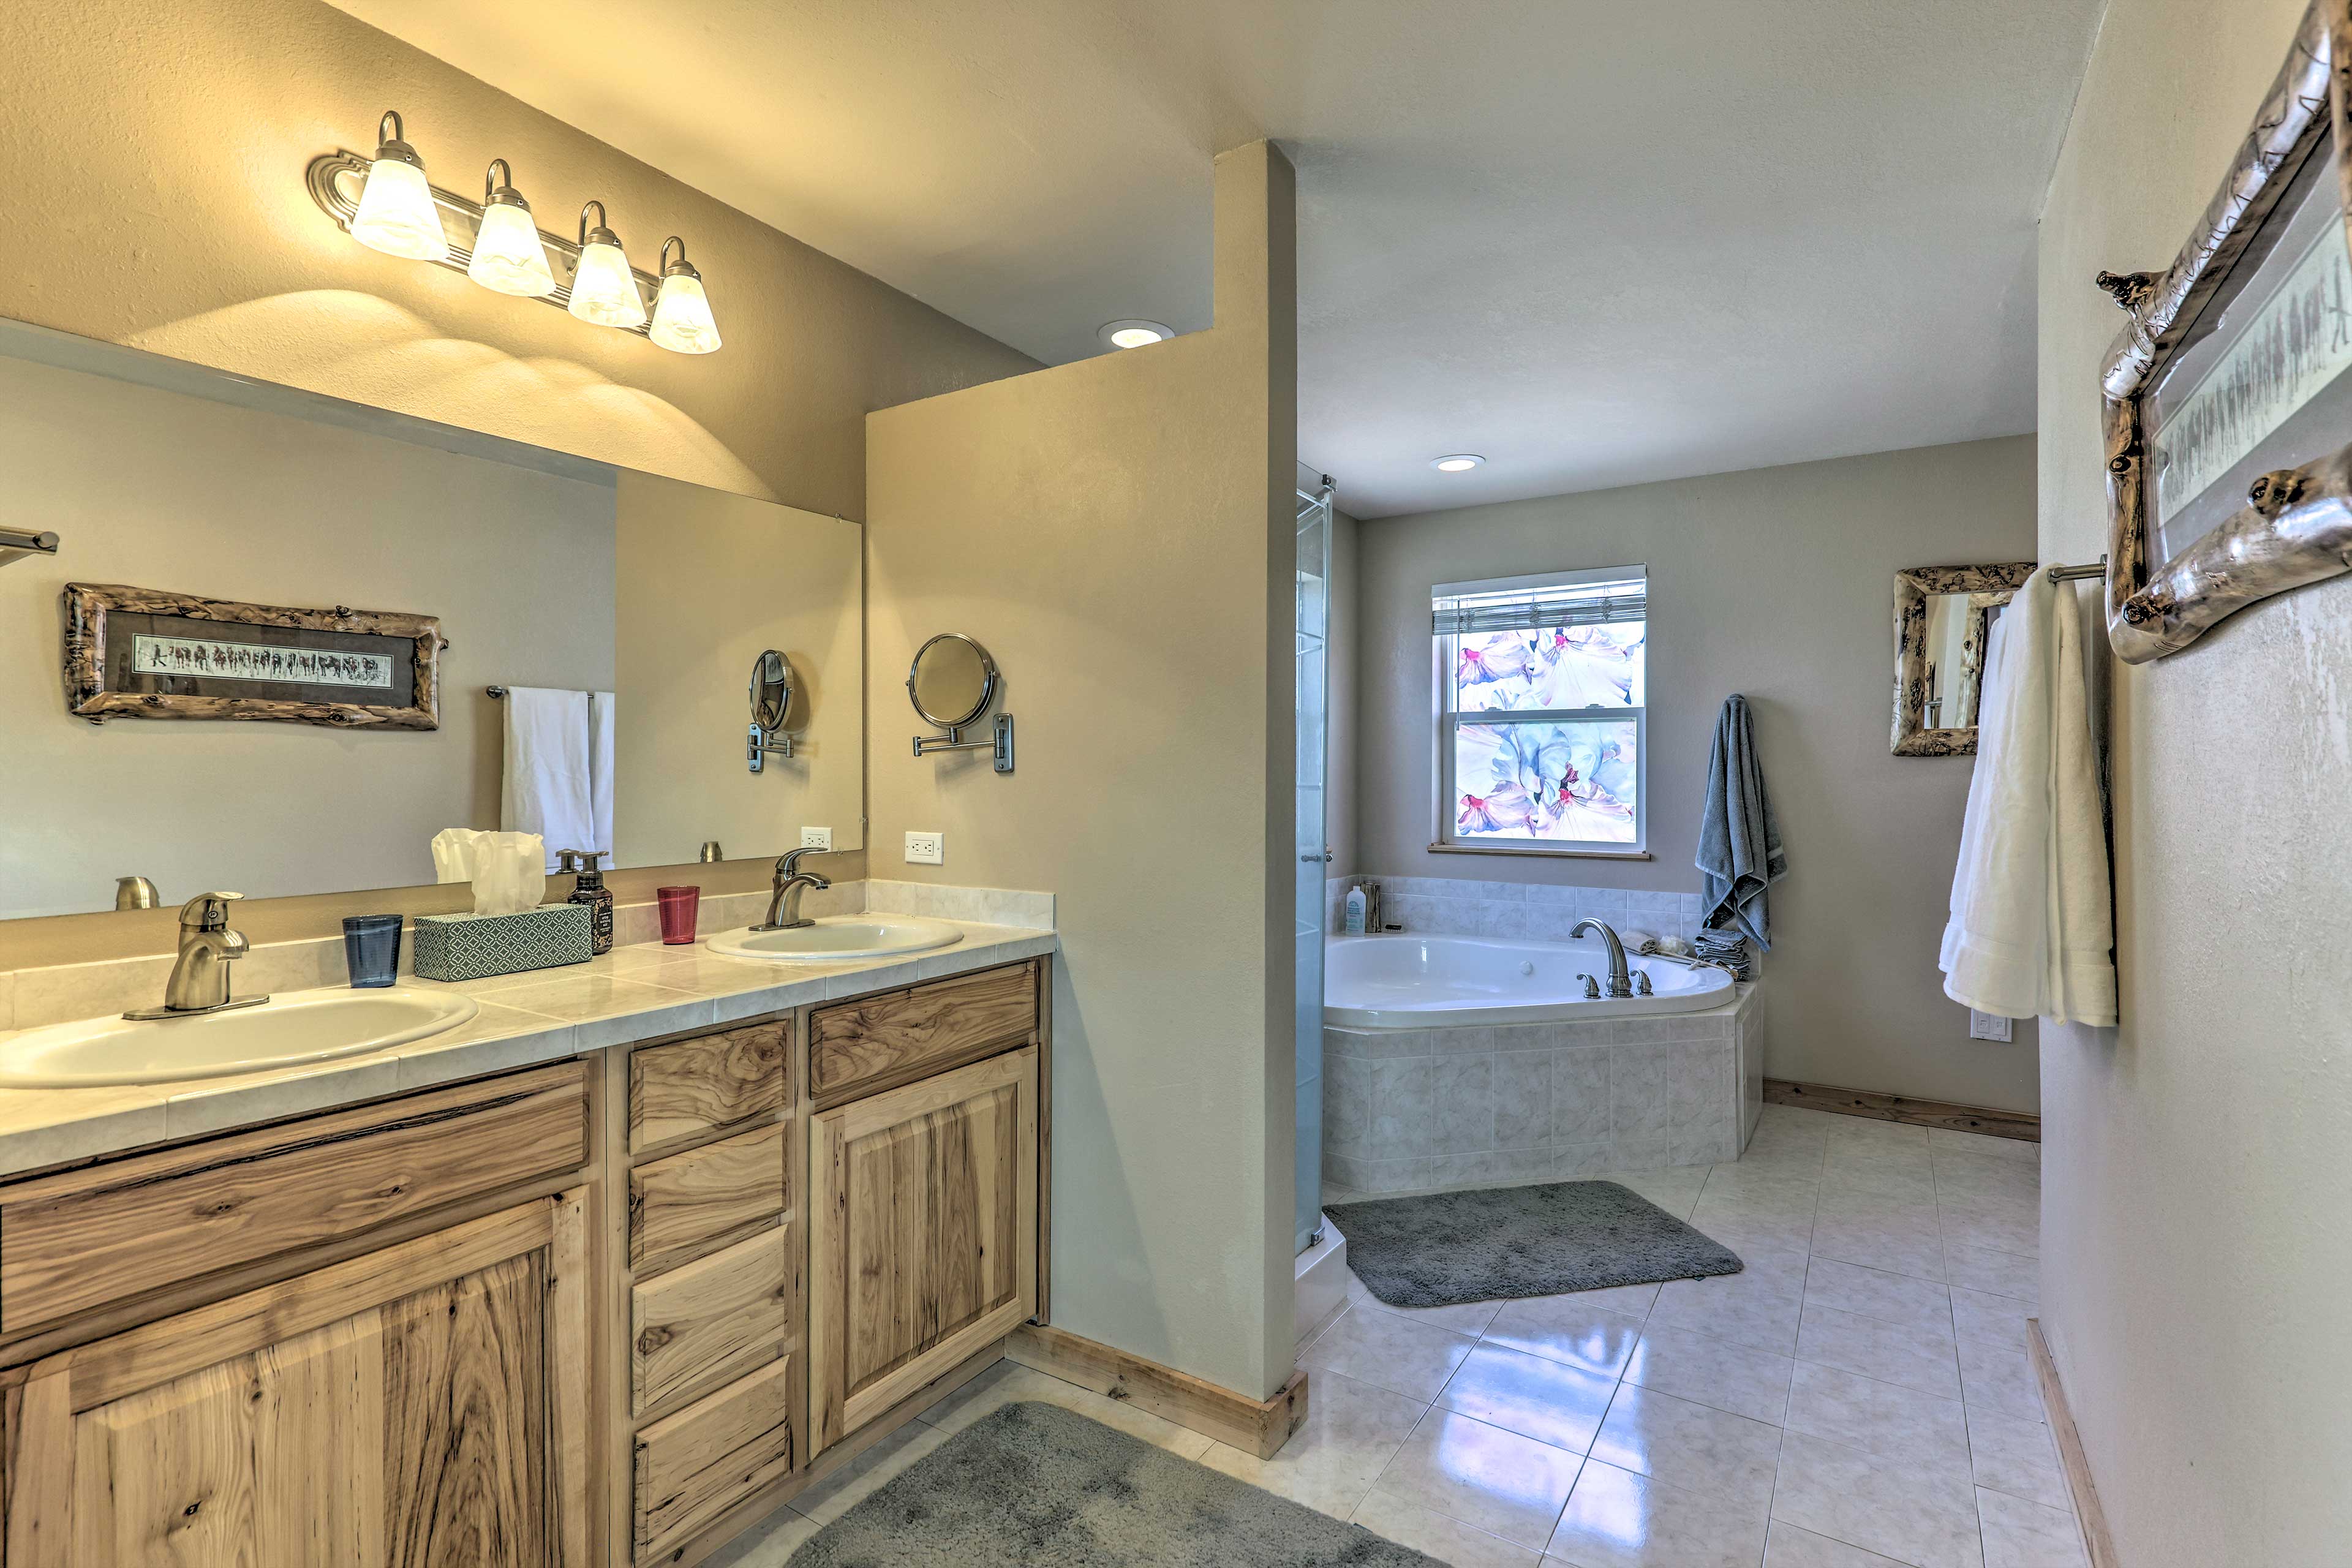 En-Suite Bathroom | Linens & Towels | Complimentary Toiletries | Hair Dryer